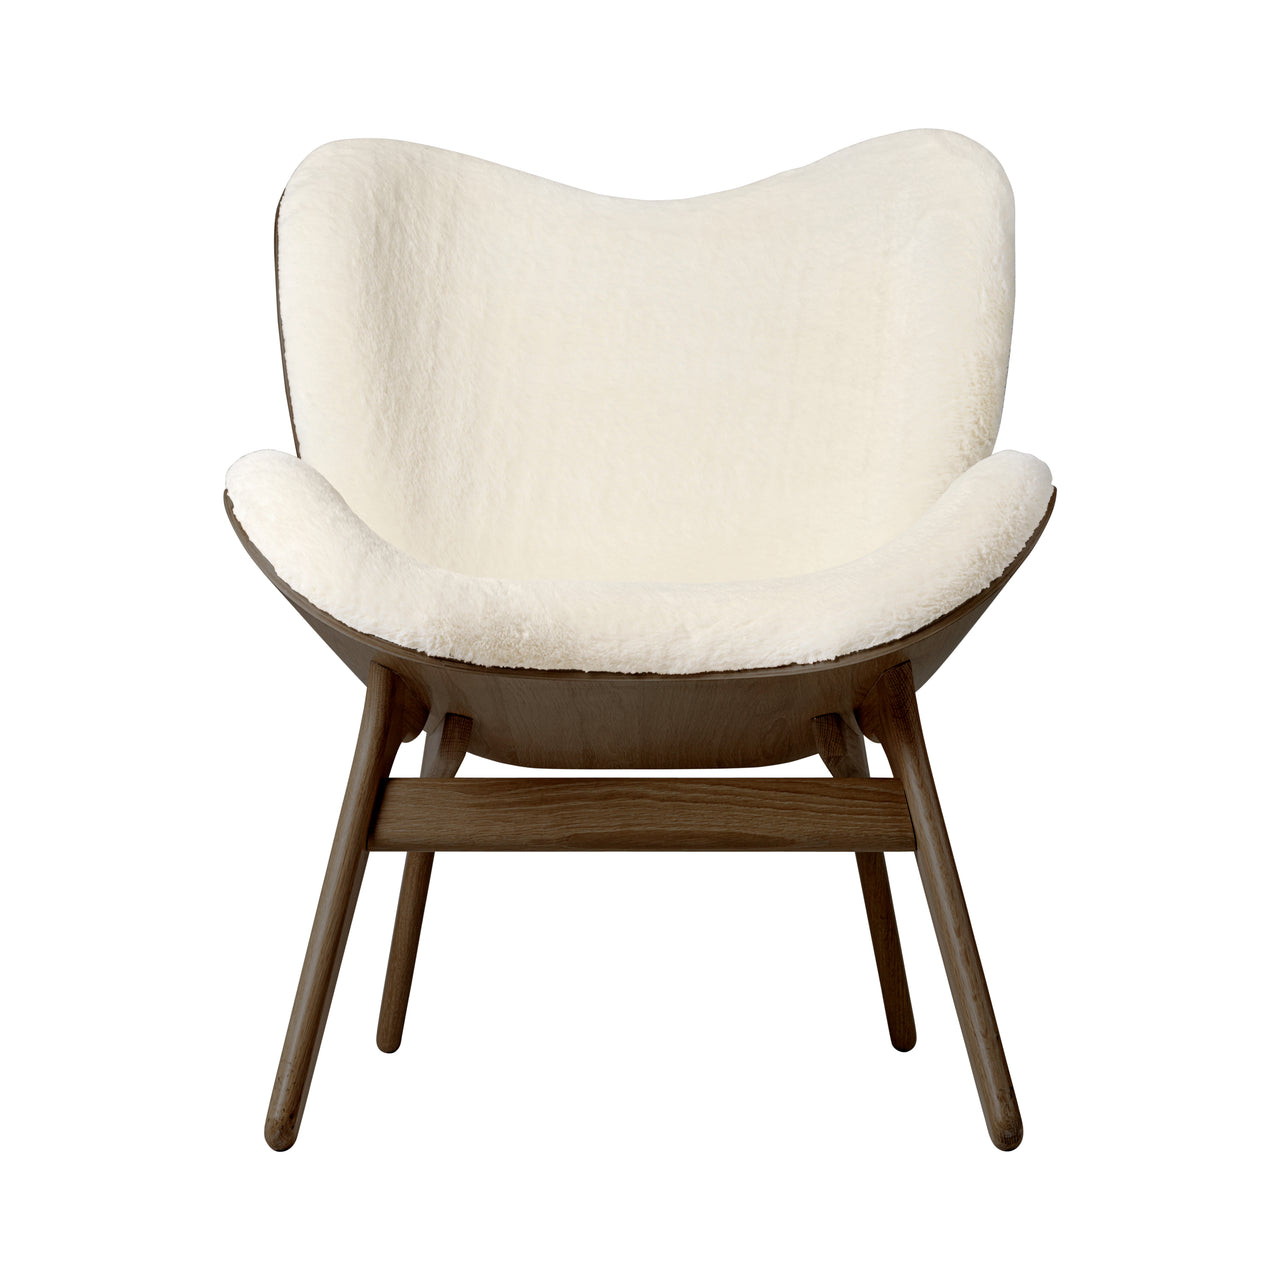 A Conversation Piece Lounge Chair: Dark Oak + Teddy White